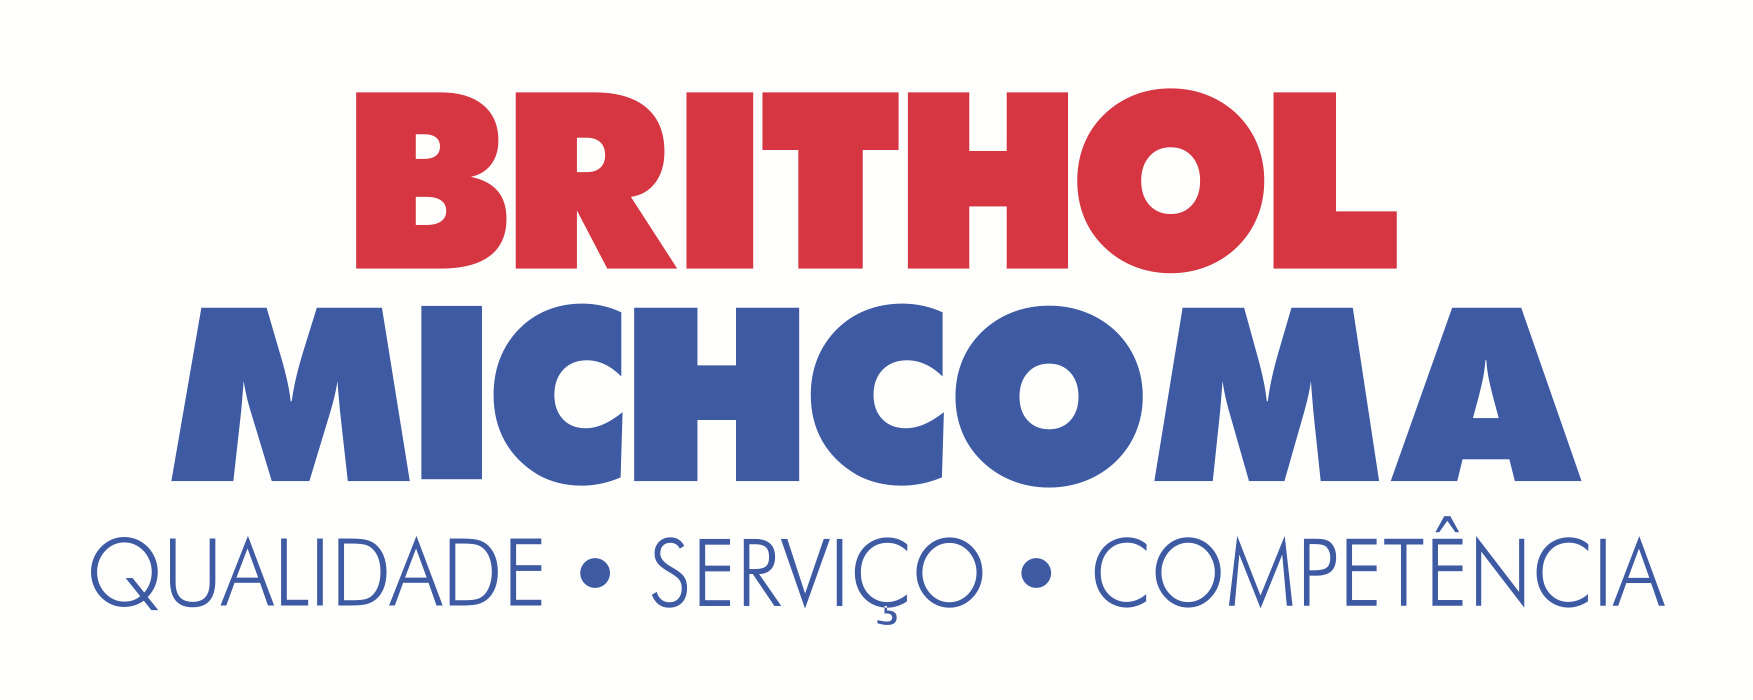 brithol-michcoma-logo-corporate-mozambique